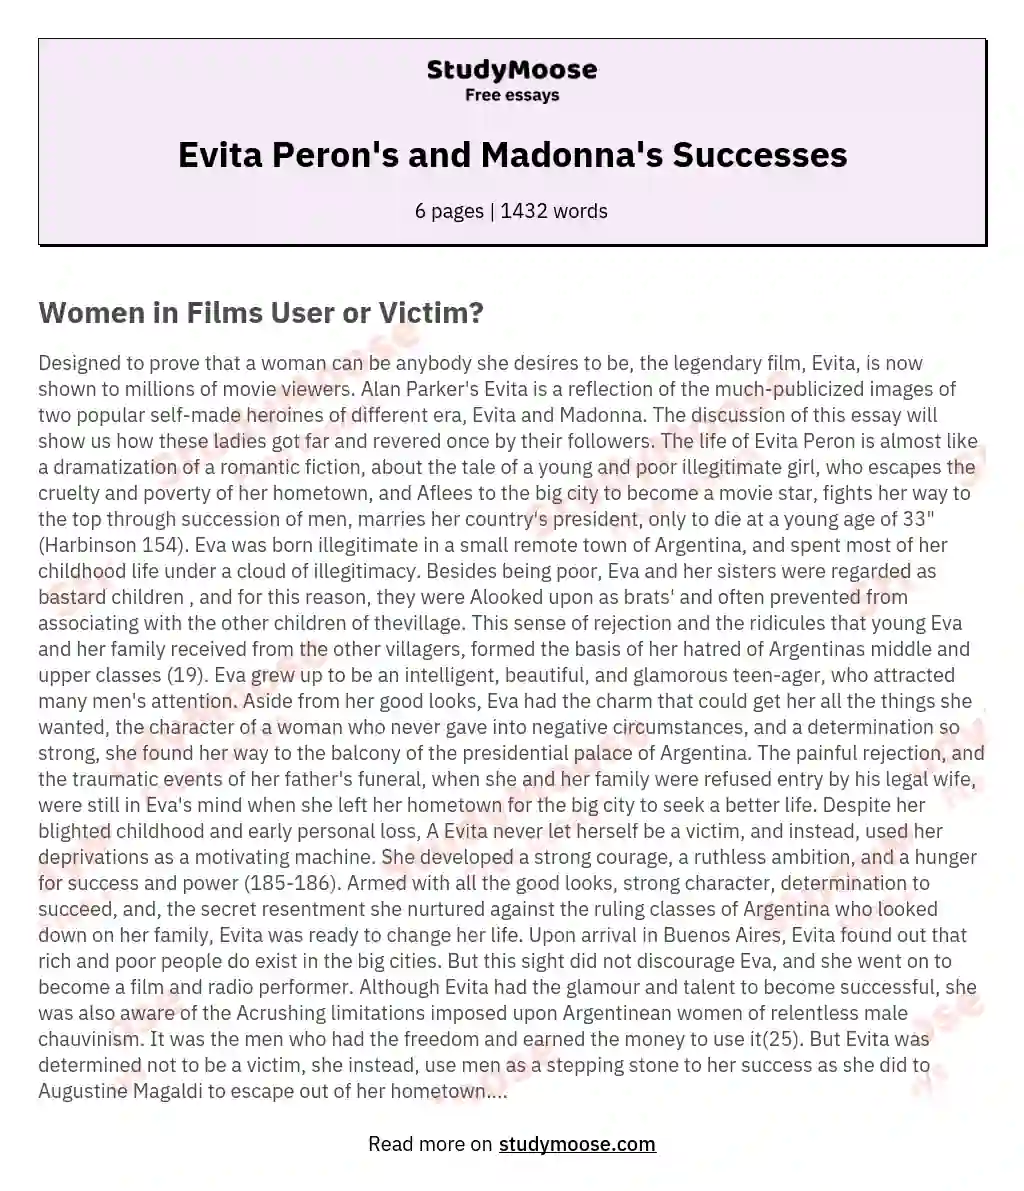 Evita Peron's and Madonna's Successes